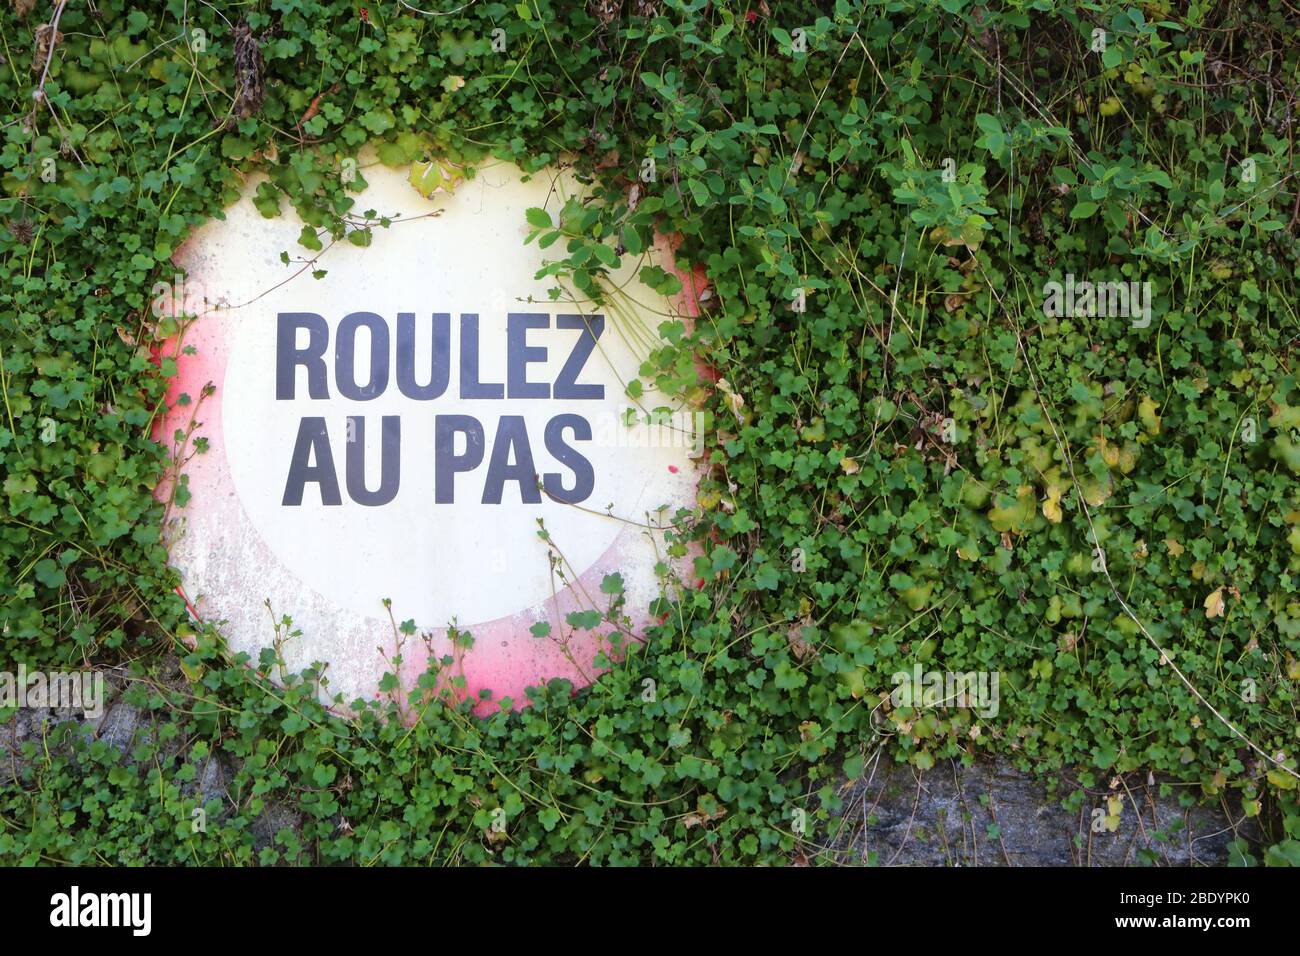 Roulez au pas. Panneau sur un mur recouvert de lierre. Saint-Gervais-les-Bains. Alta Saboya. Francia. Foto de stock